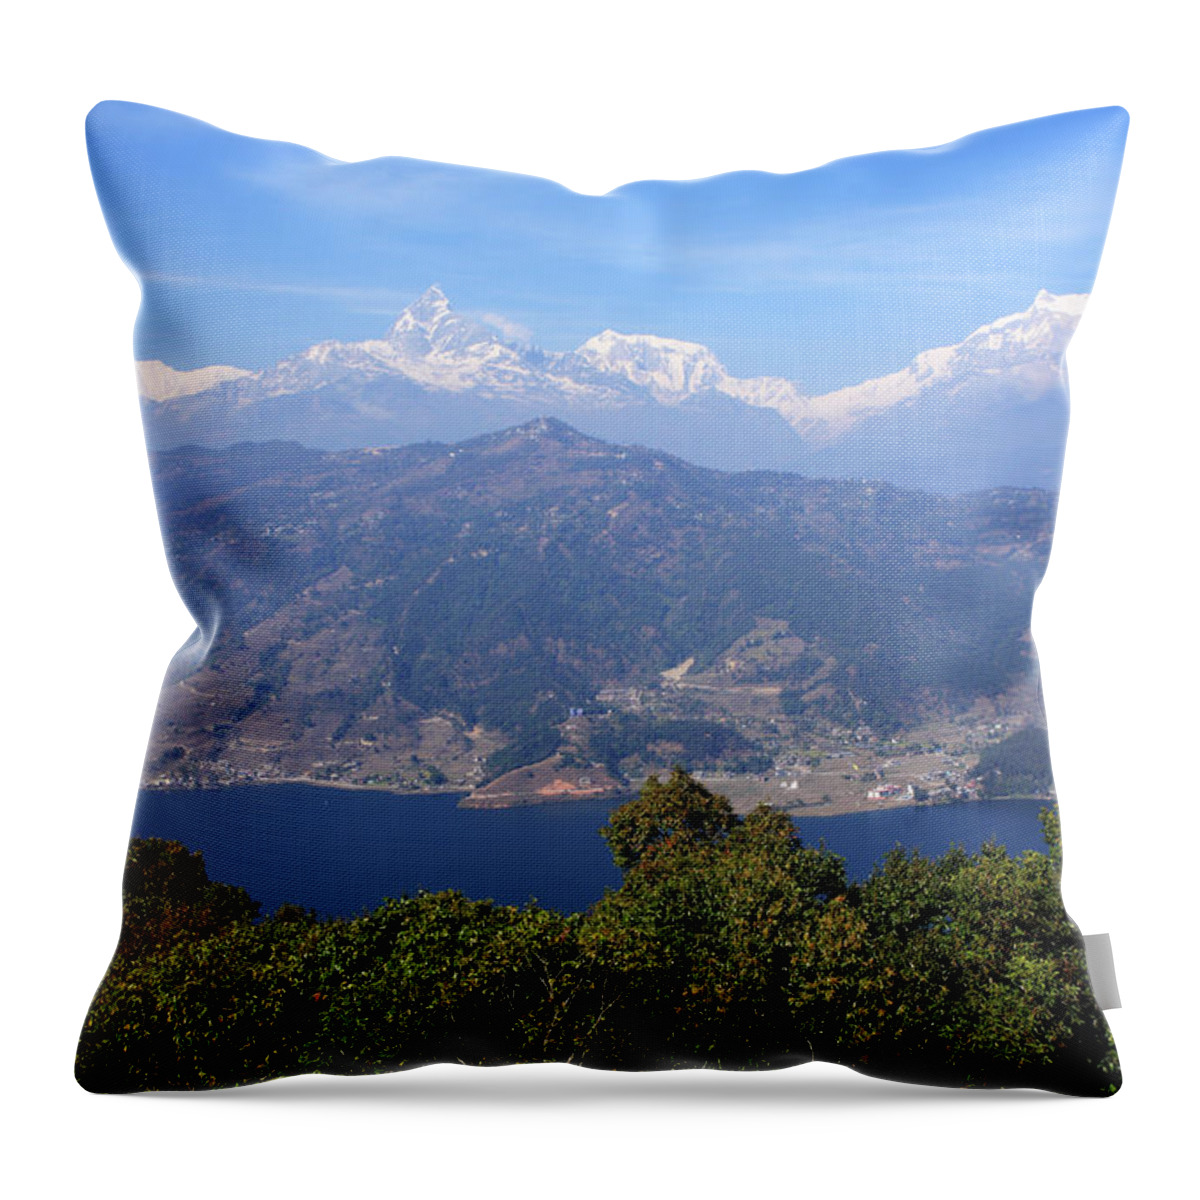 Himalayan Throw Pillow featuring the photograph Himalayan Mountain Range #1 by Aidan Moran